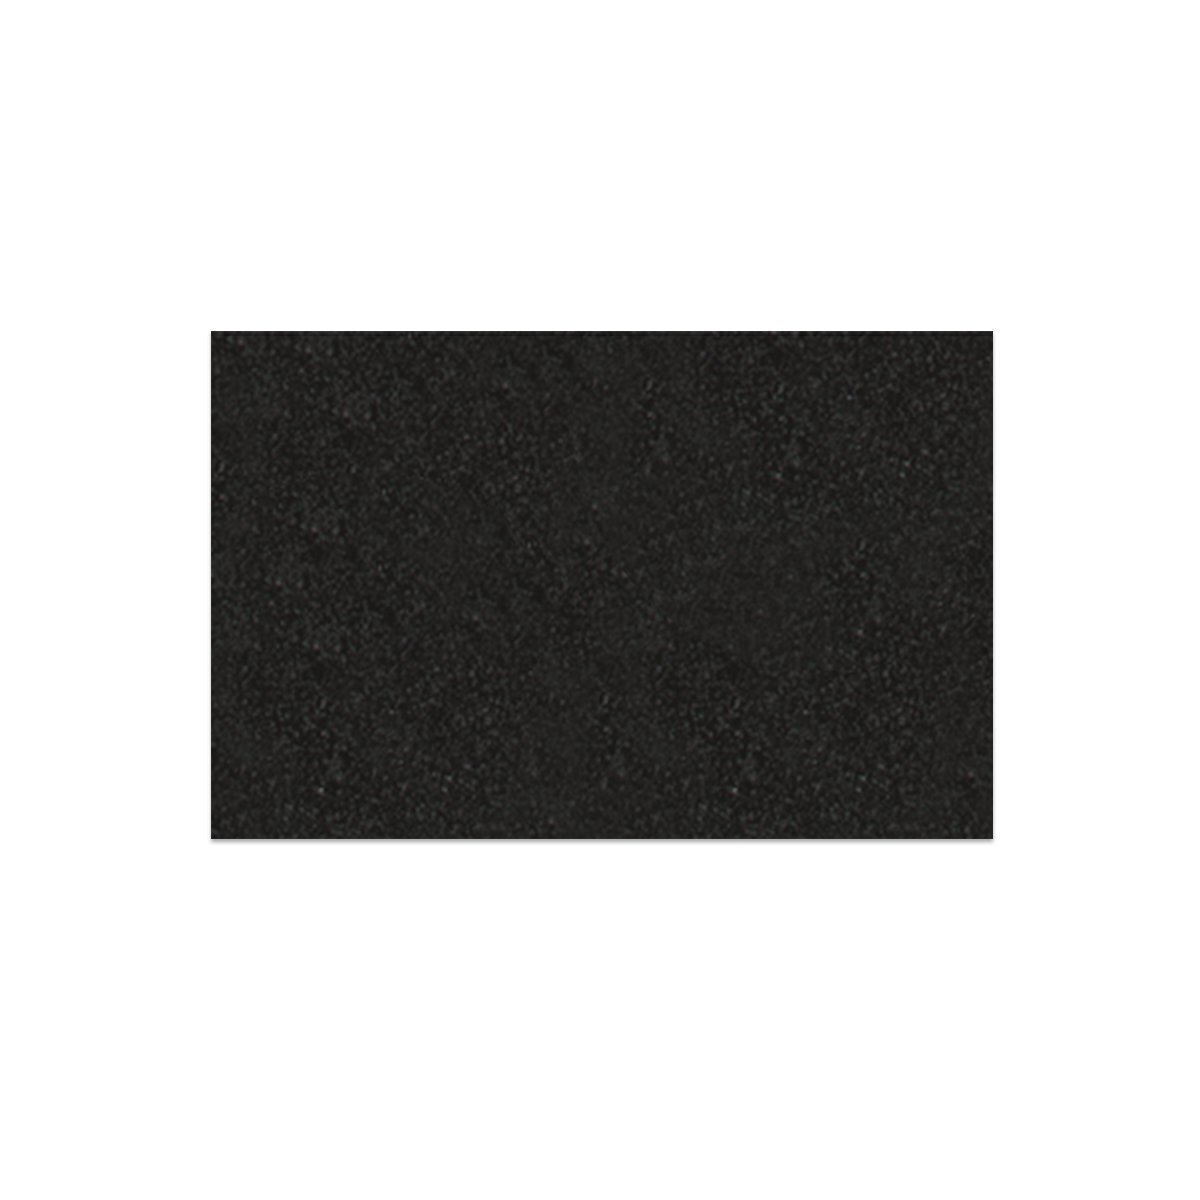 Mossgummi 2mm, 30 x 40 cm, 1 Bogen, schwarz